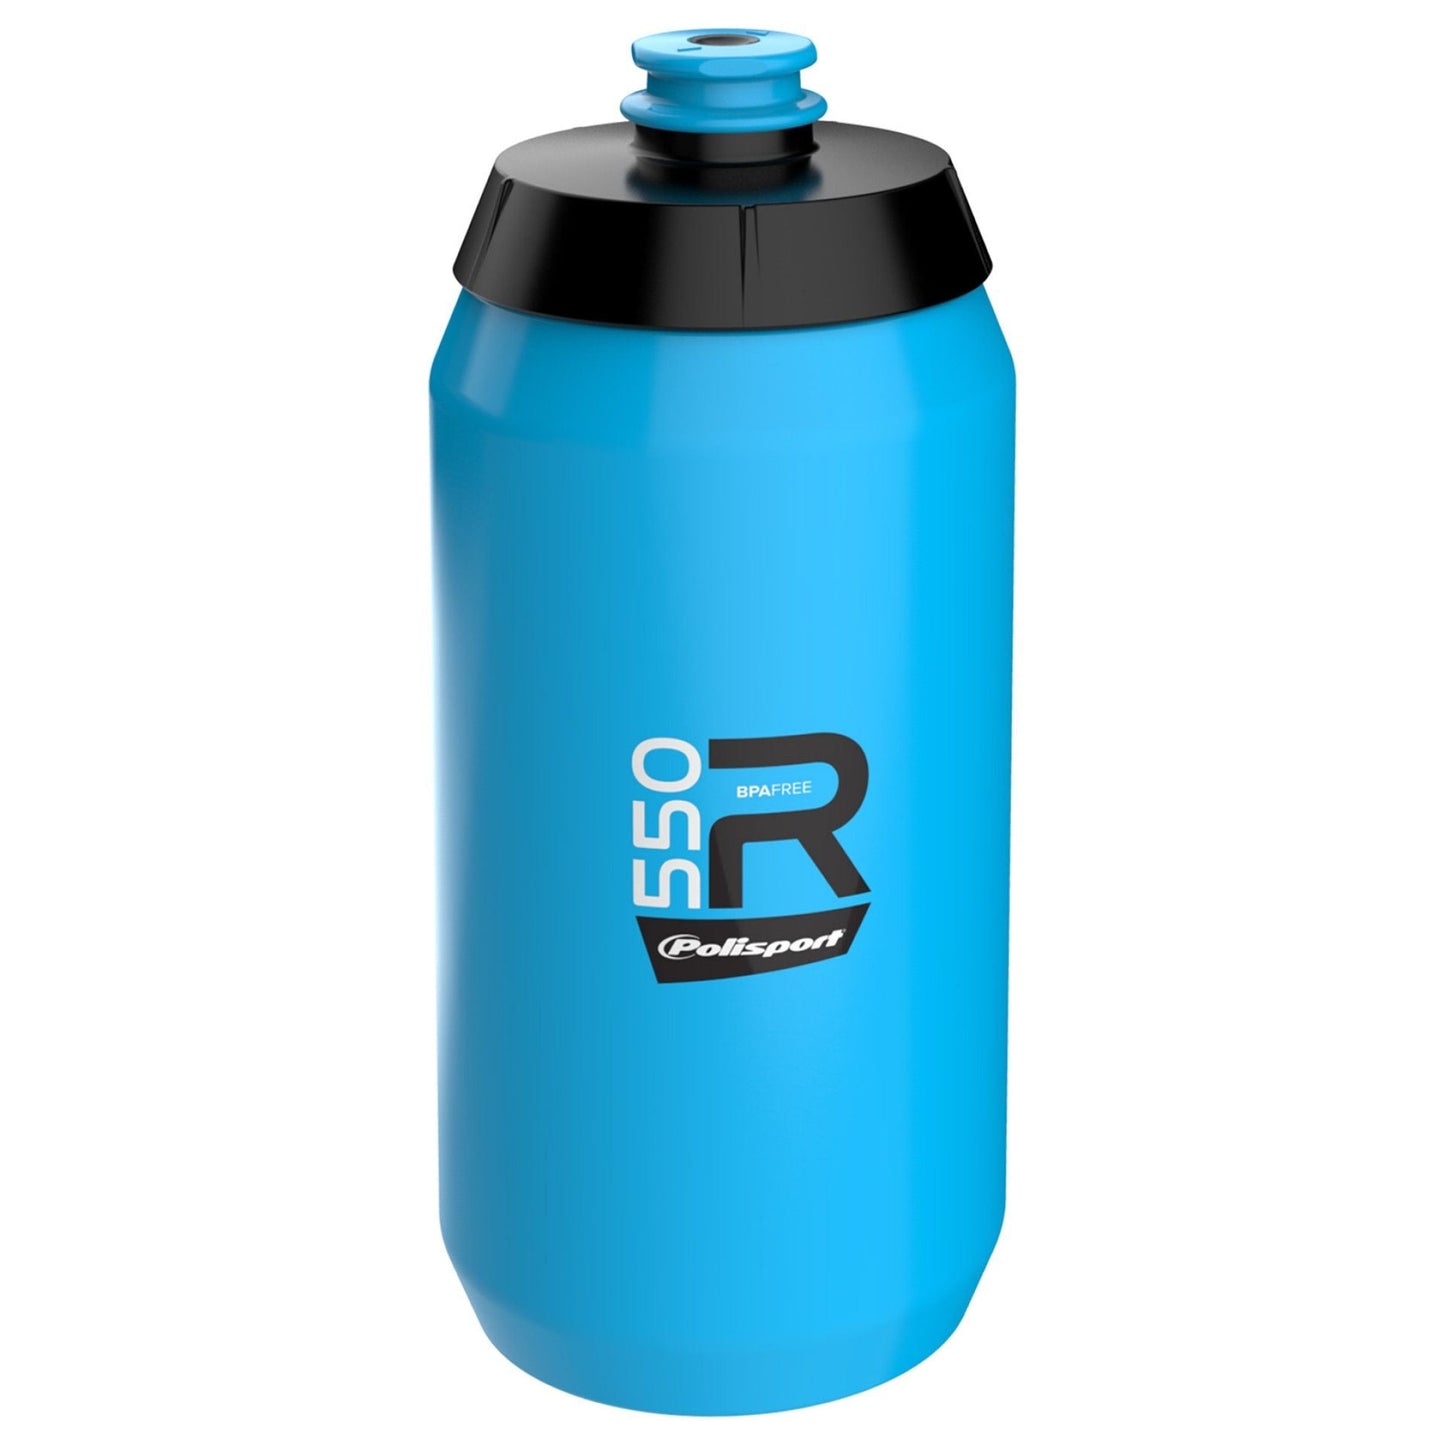 Polisport Professional Blue Water Bottle - 550ml Screw-On Cap